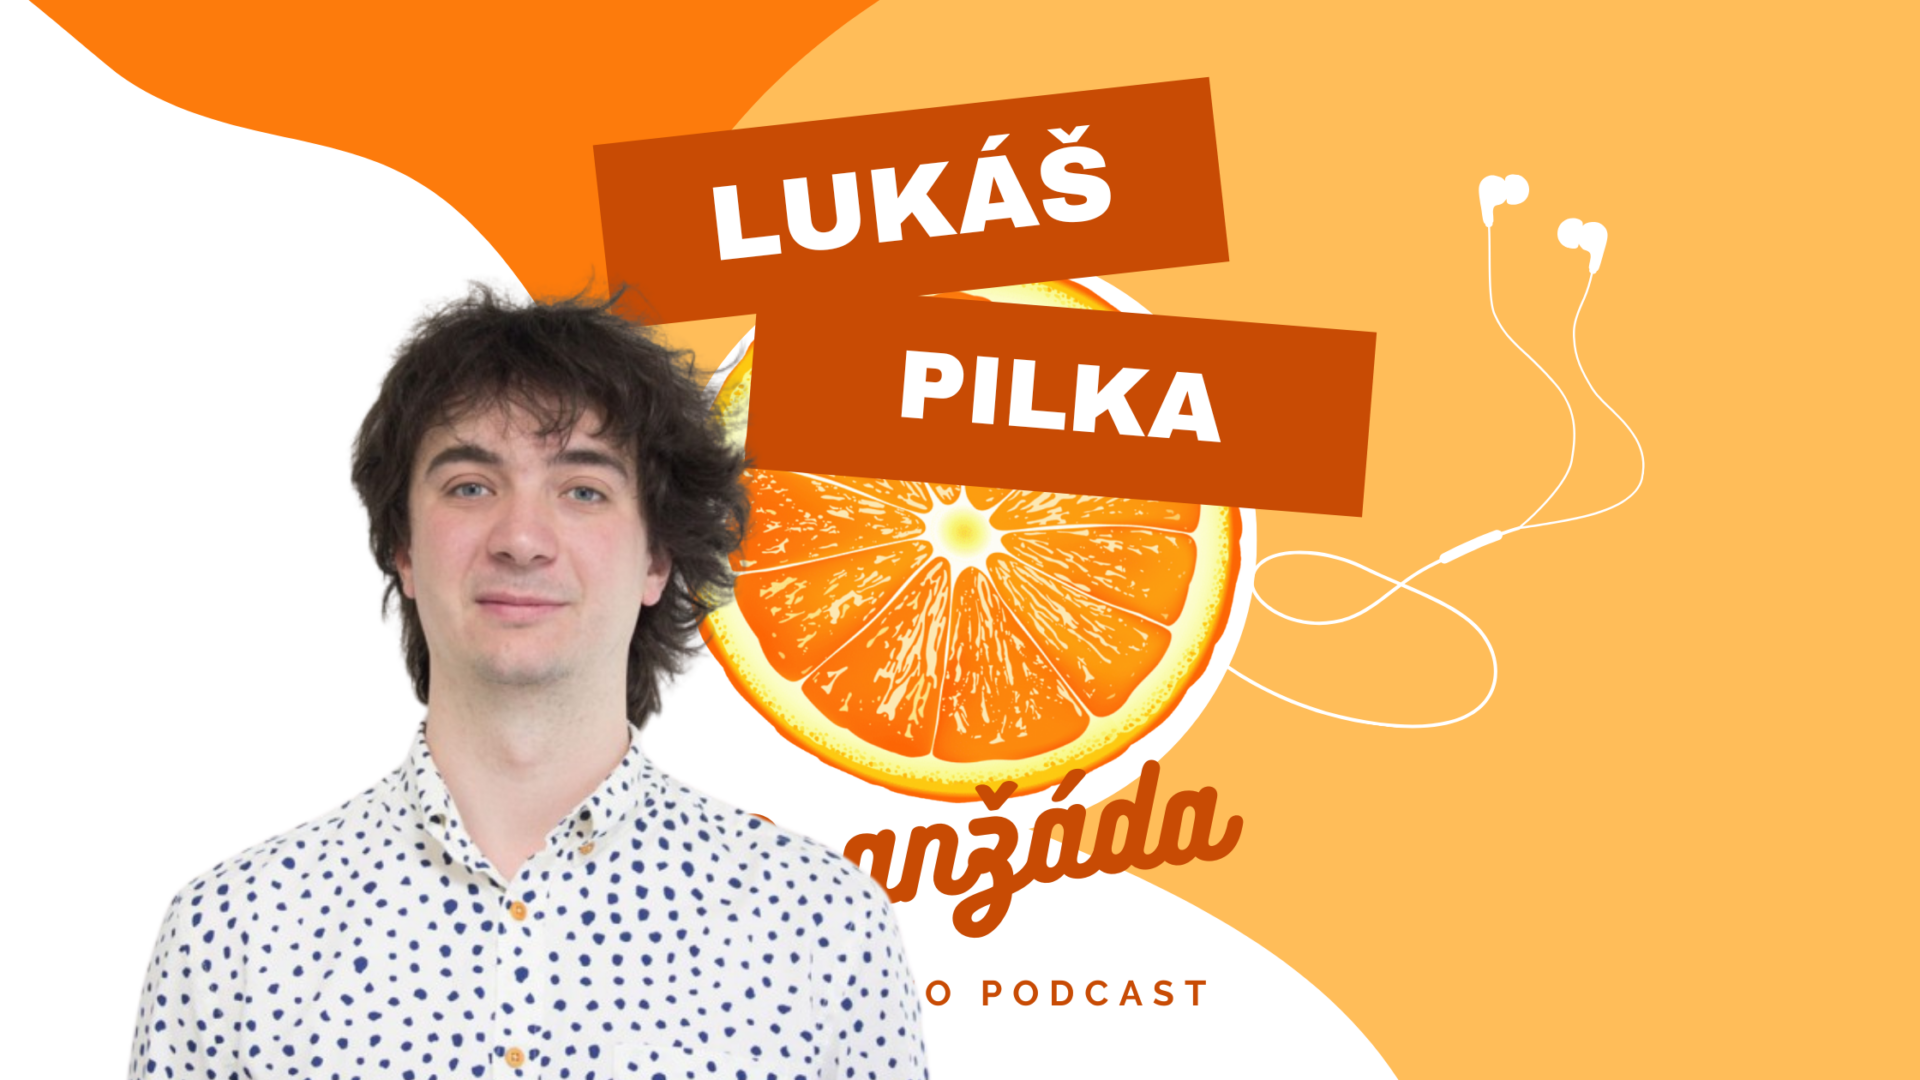 Oranžáda podcast s Lukášem Pilkou